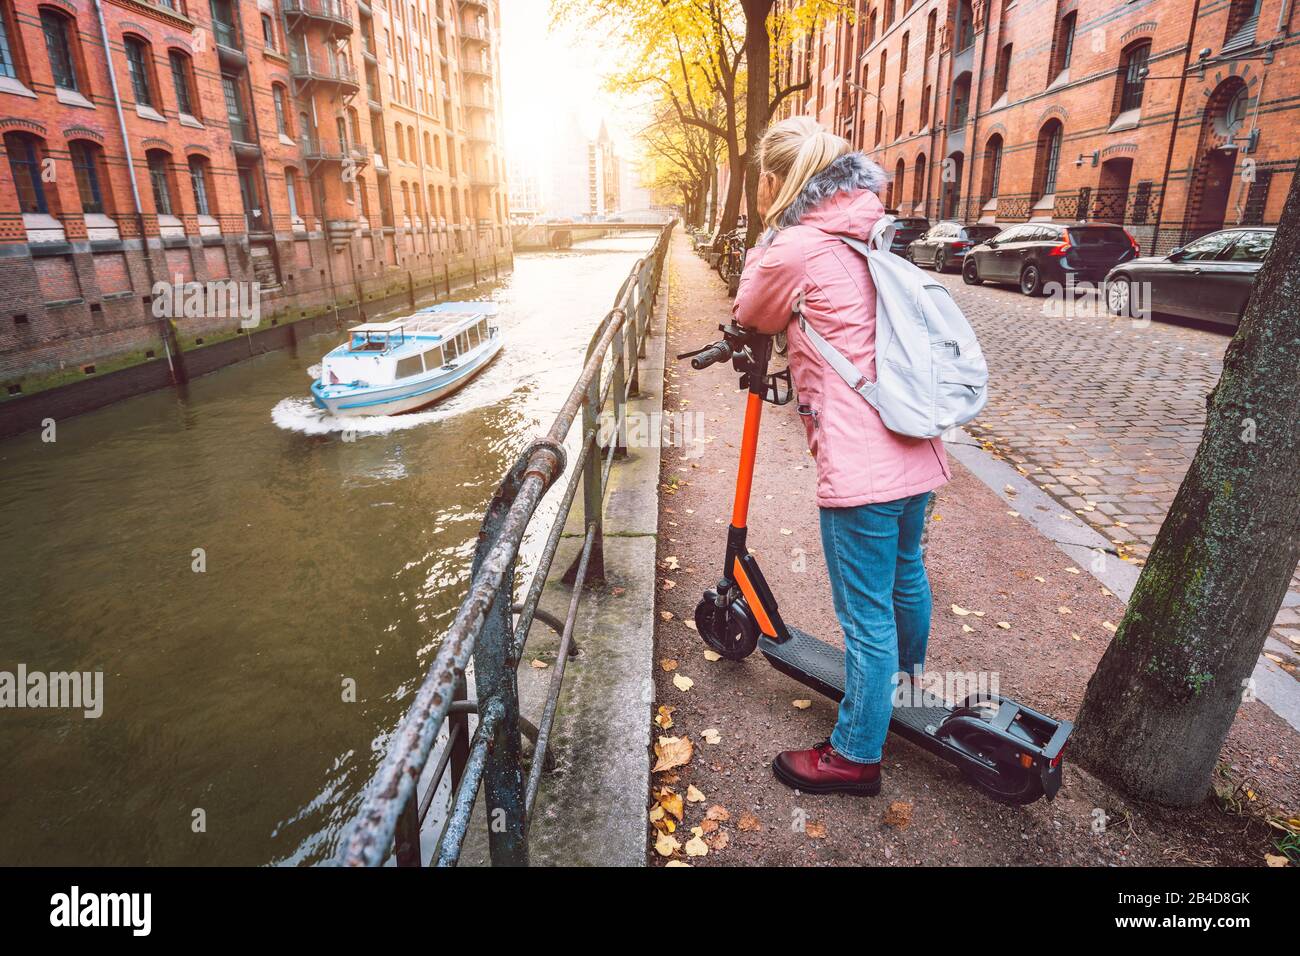 Rückenansicht einer Frau mit Rucksack und e-Roller, Blick auf die historische Speicherstadt a Amburgo im Warmen Licht des Sonnenuntergang, Deutschla Foto Stock